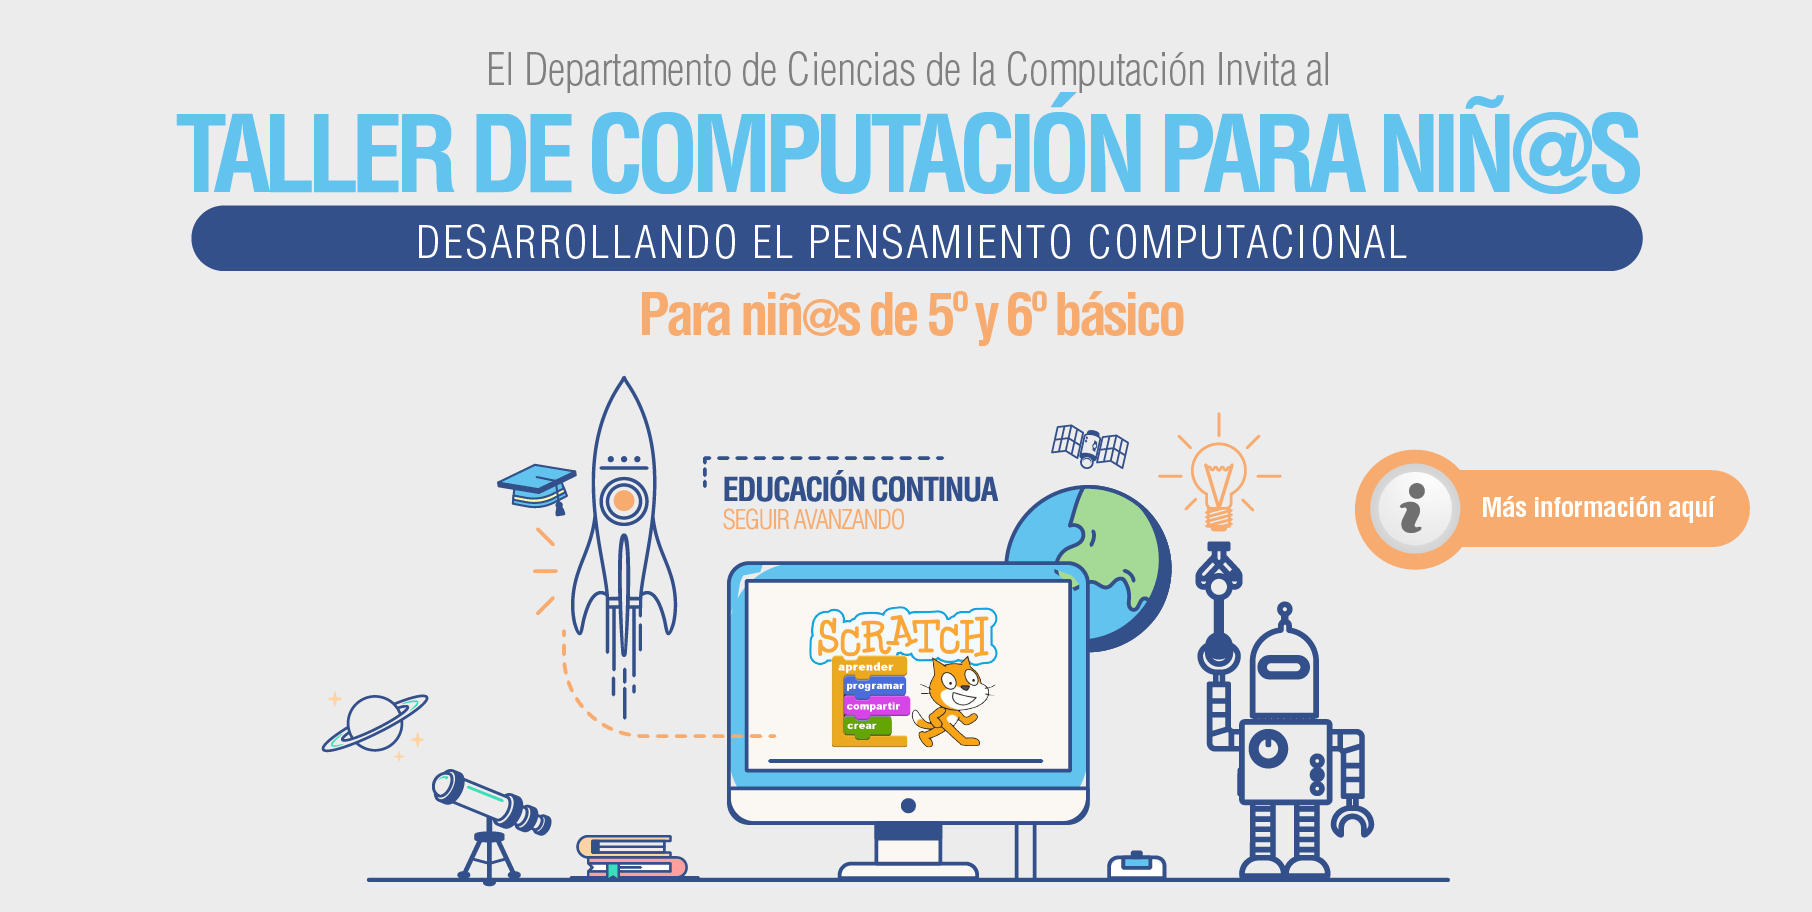 Curso: “Desarrollando el Pensamiento Computacional en los niños” https://www.dcc.uchile.cl/niños